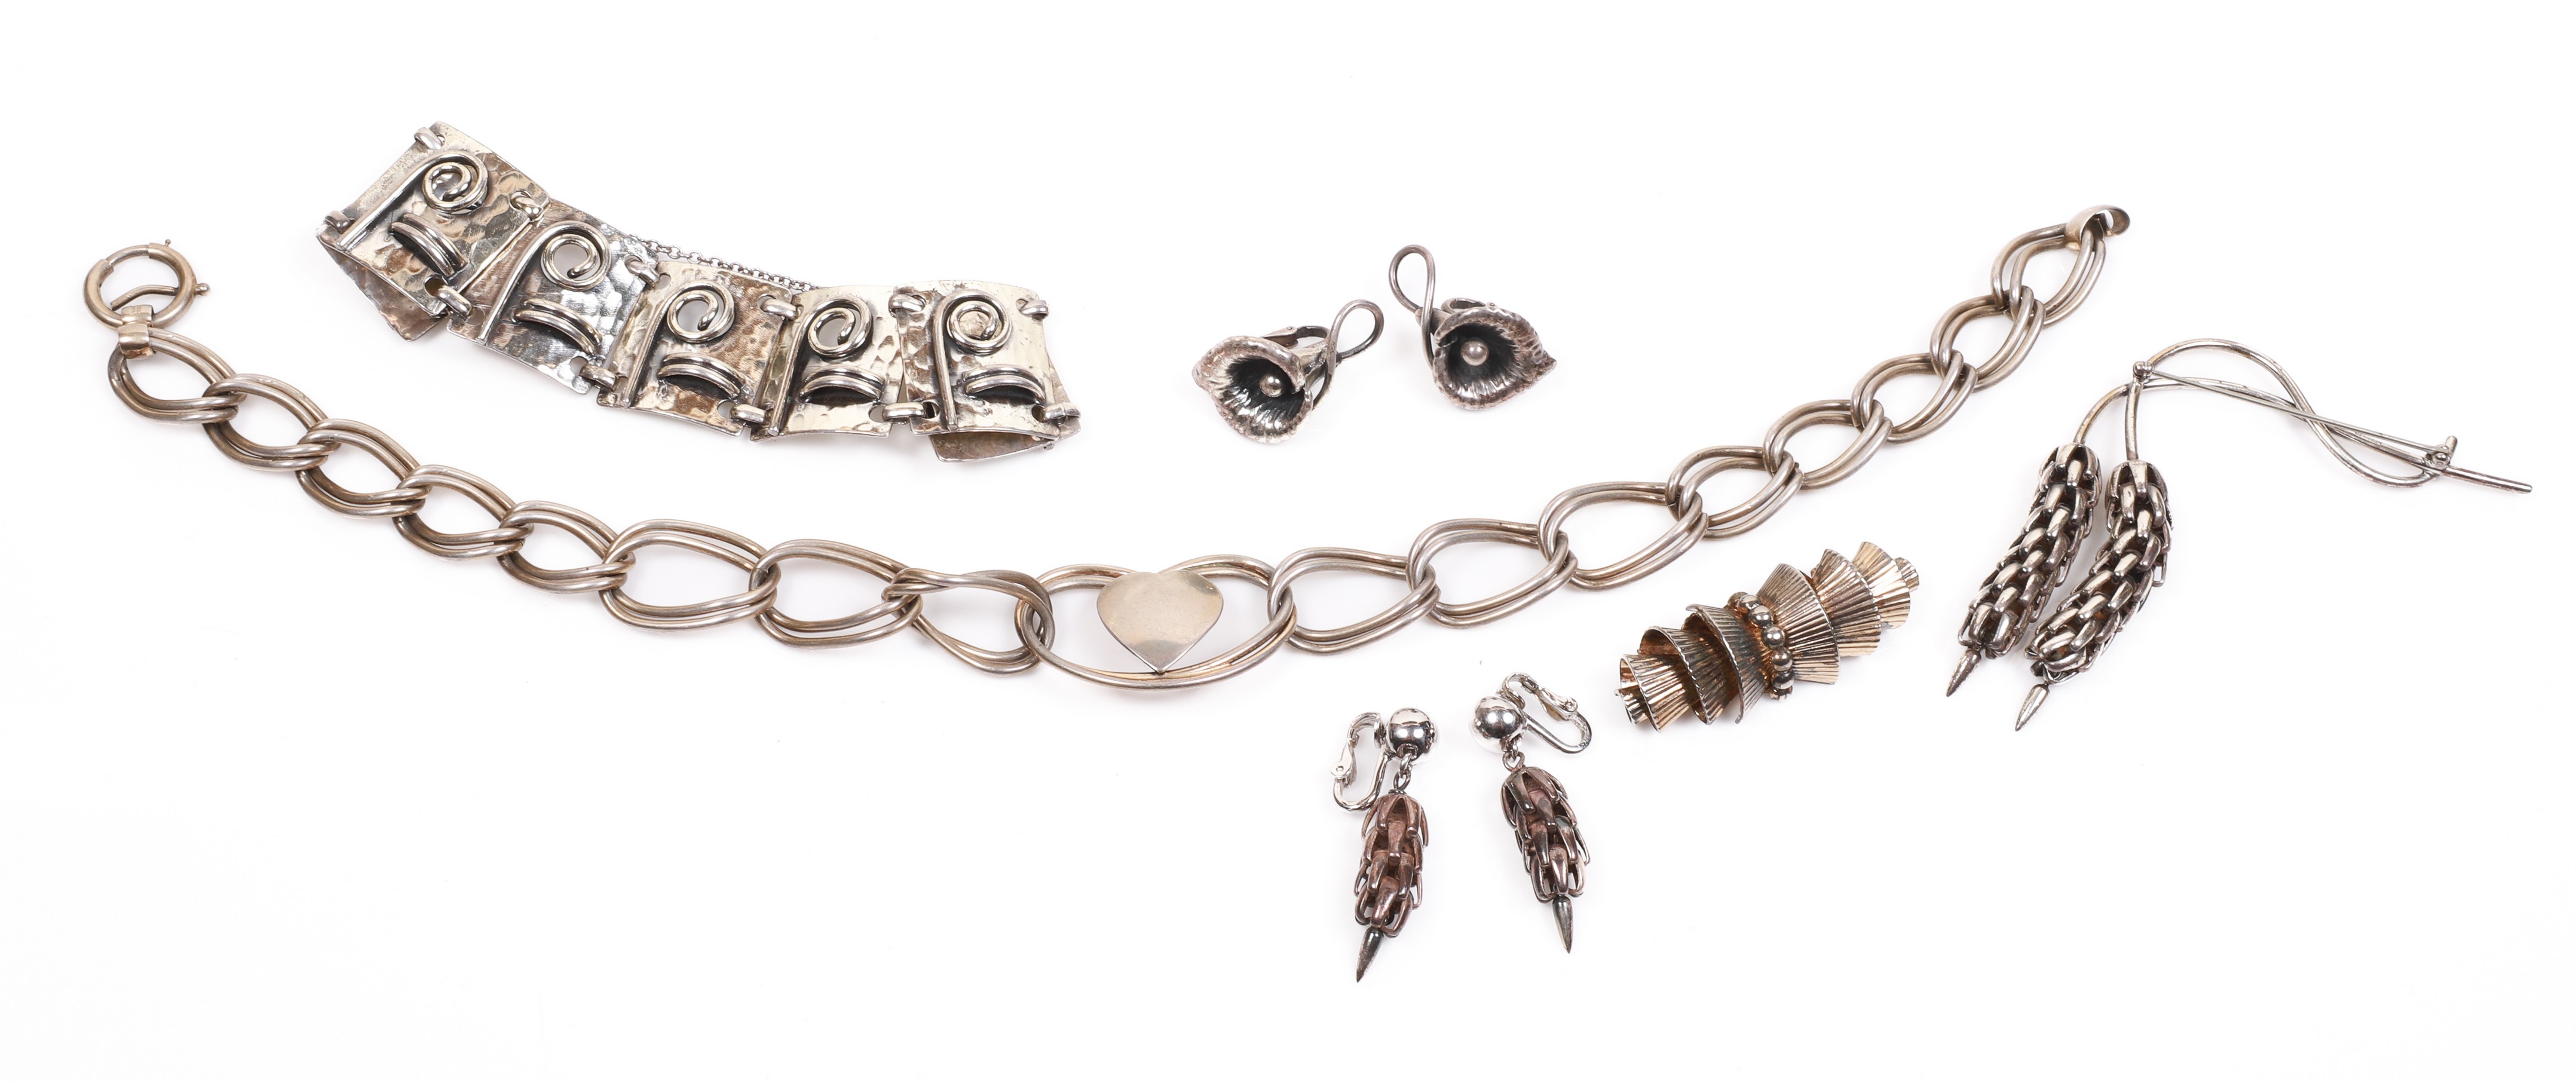 Napier designer jewelry to include Napier